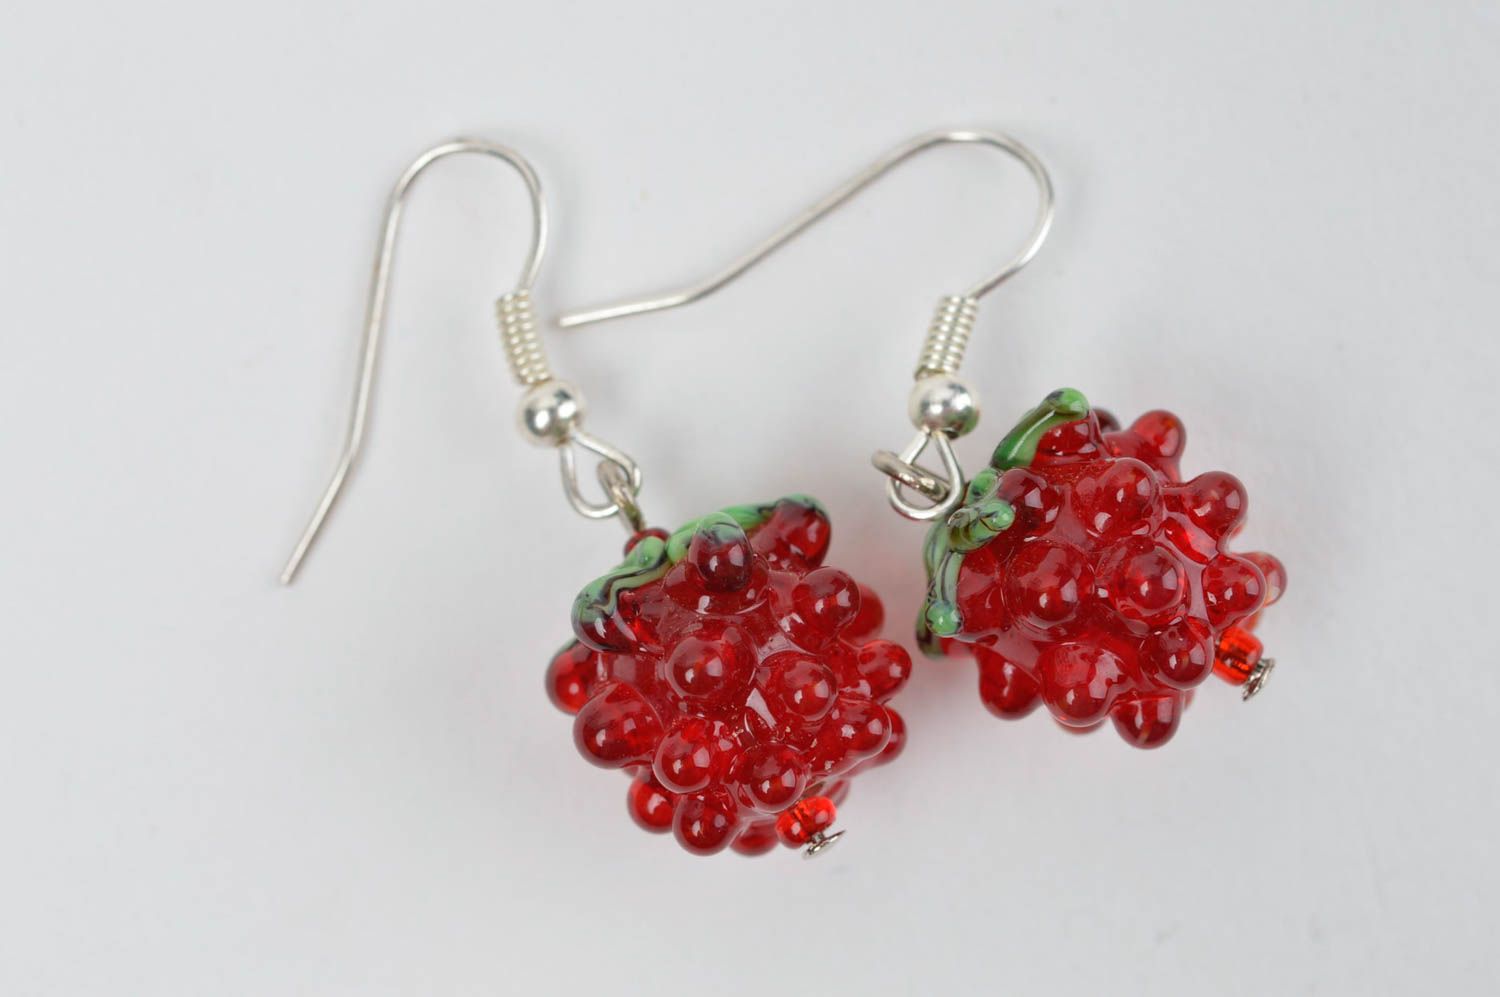 Handmade glass earrings designer accessories for women stylish earrings photo 2